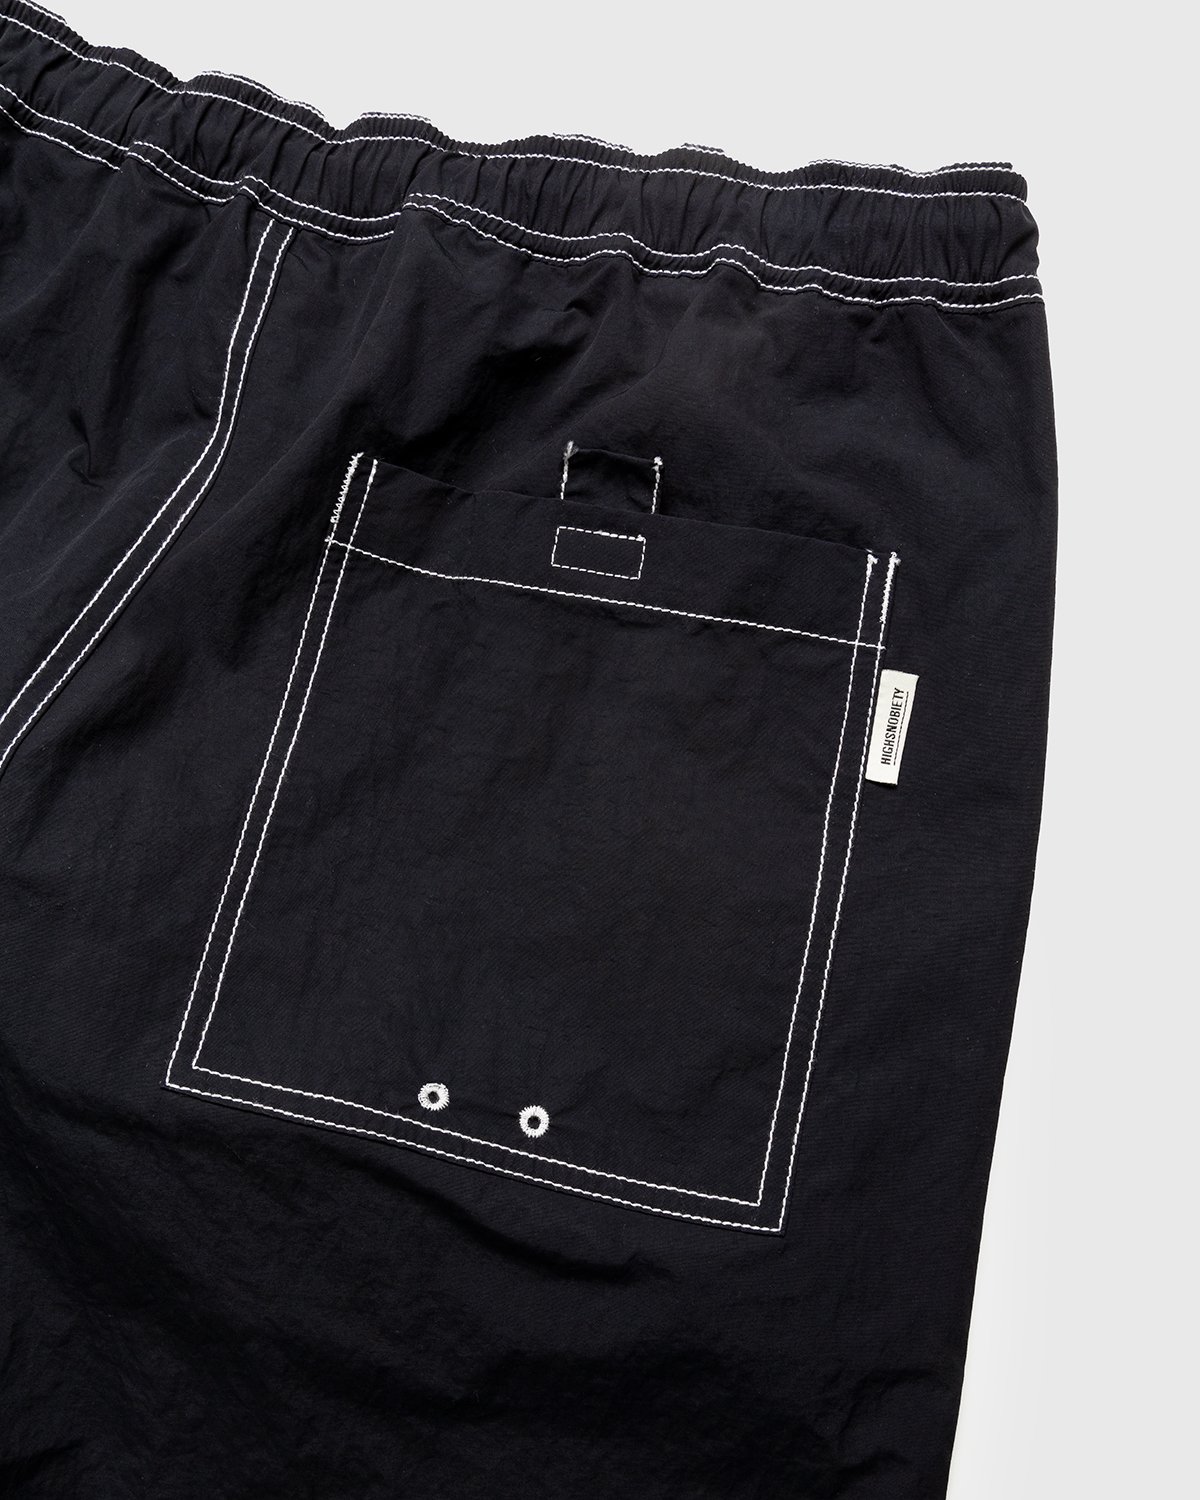 Highsnobiety - Contrast Brushed Nylon Elastic Pants Black - Clothing - Black - Image 3